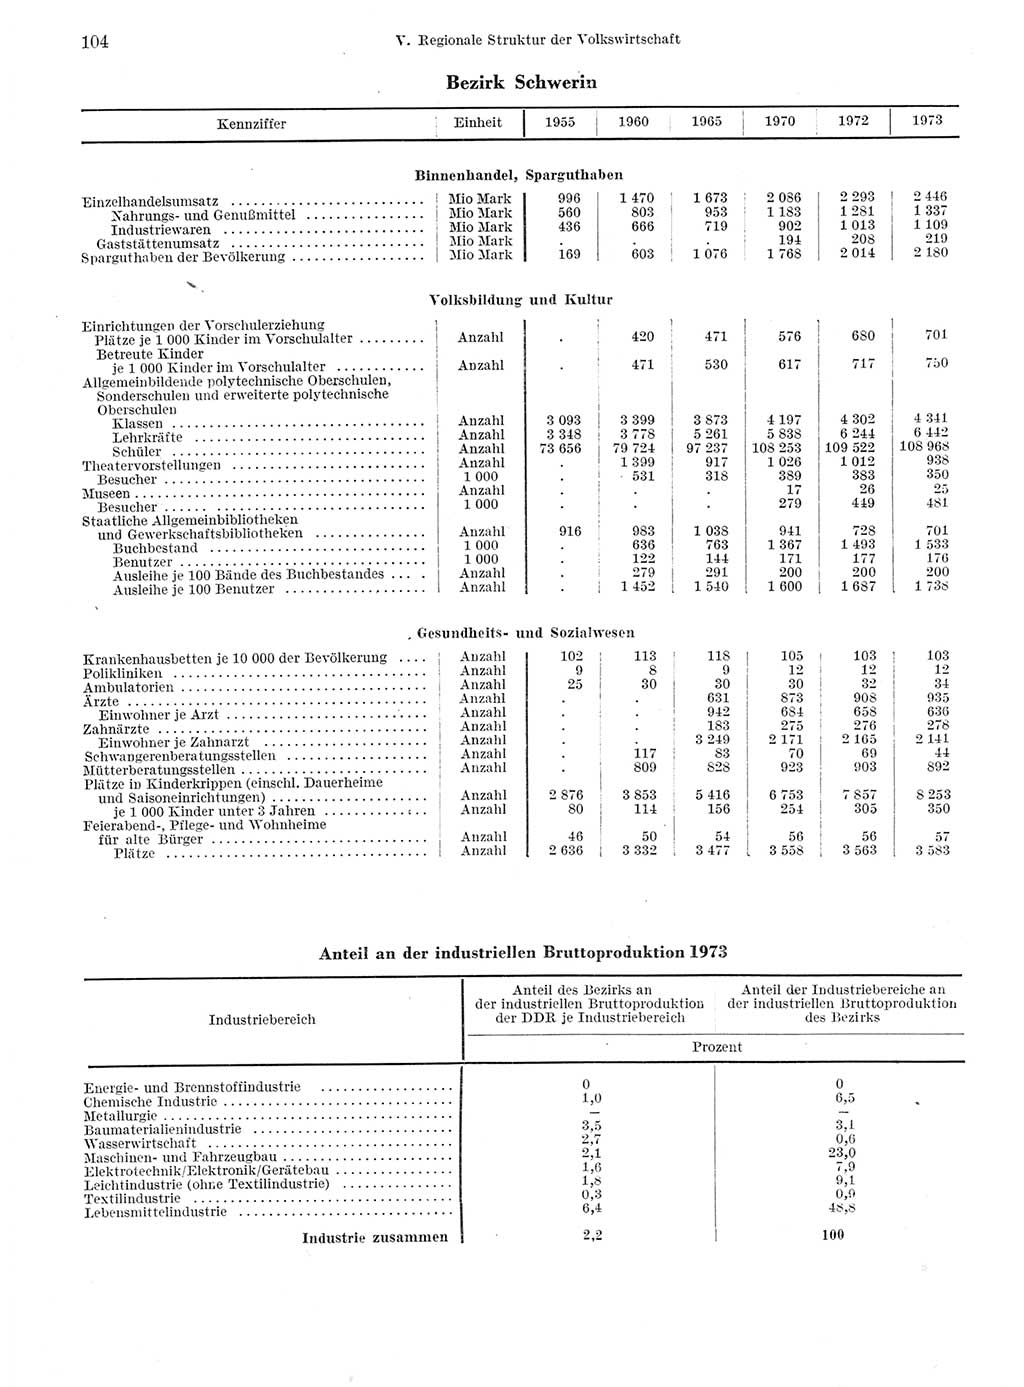 Statistisches Jahrbuch der Deutschen Demokratischen Republik (DDR) 1974, Seite 104 (Stat. Jb. DDR 1974, S. 104)